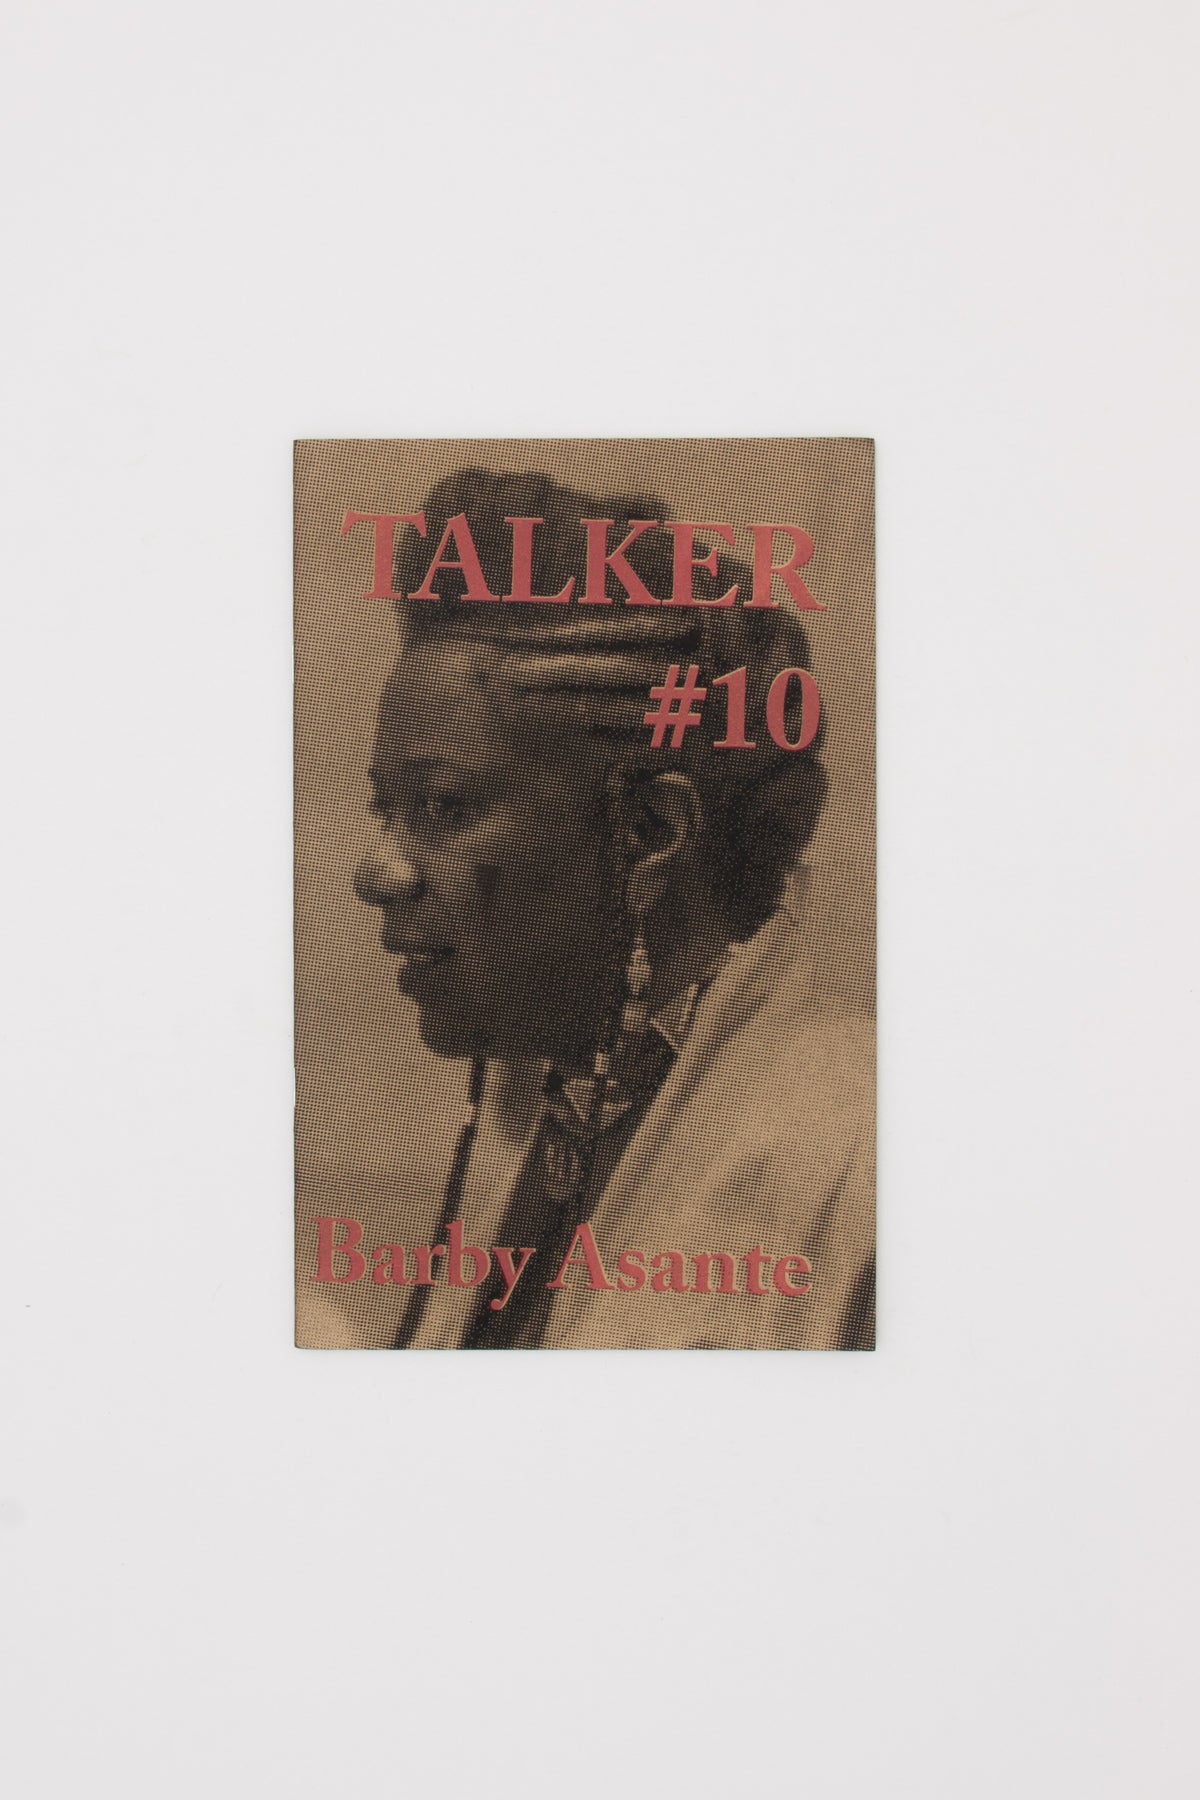 Talker 10 - Barby Asante